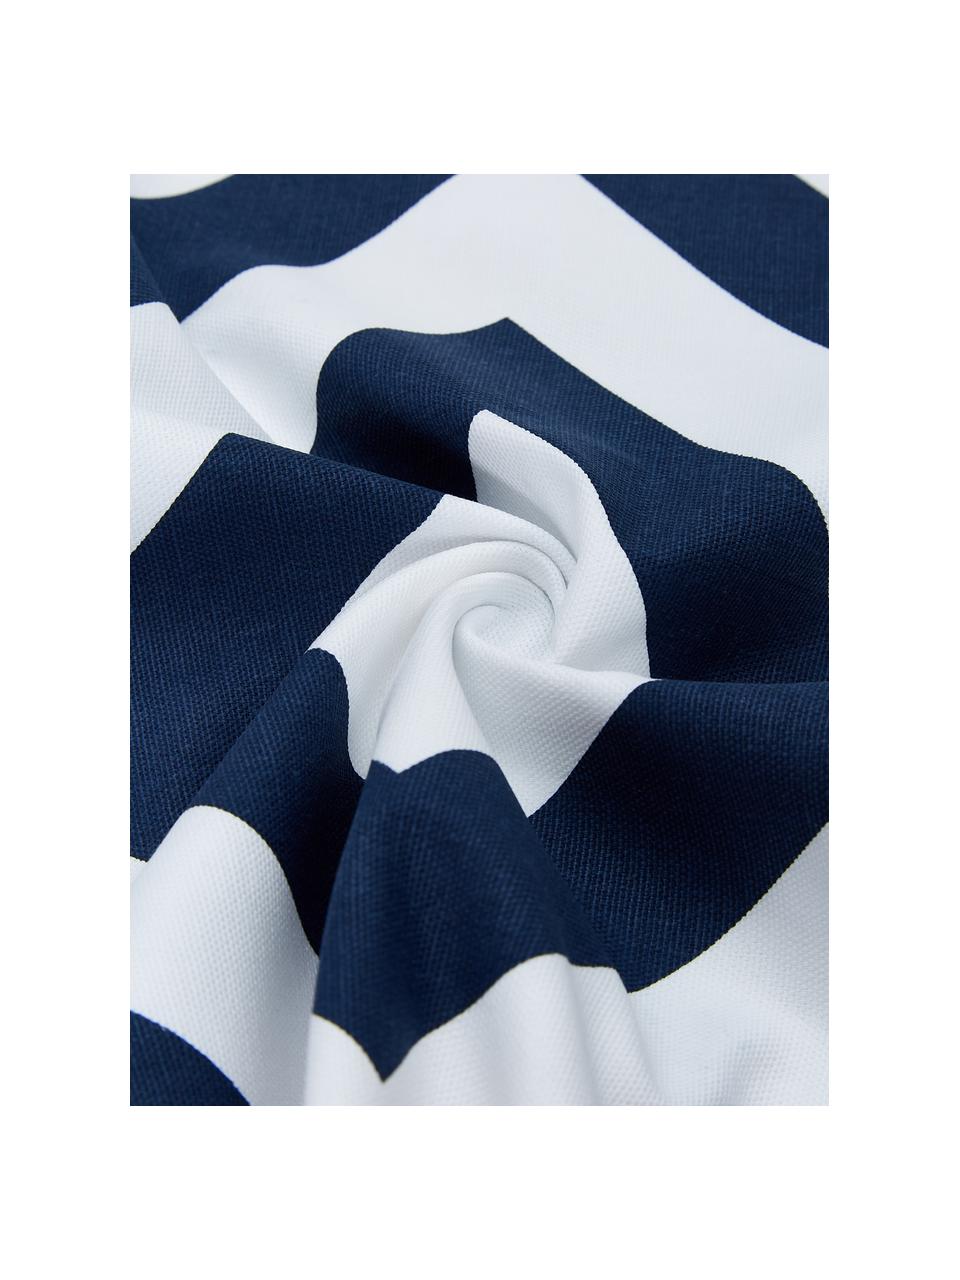 Poszewka na poduszkę Sera, 100% bawełna, Biały, ciemny niebieski, S 45 x D 45 cm